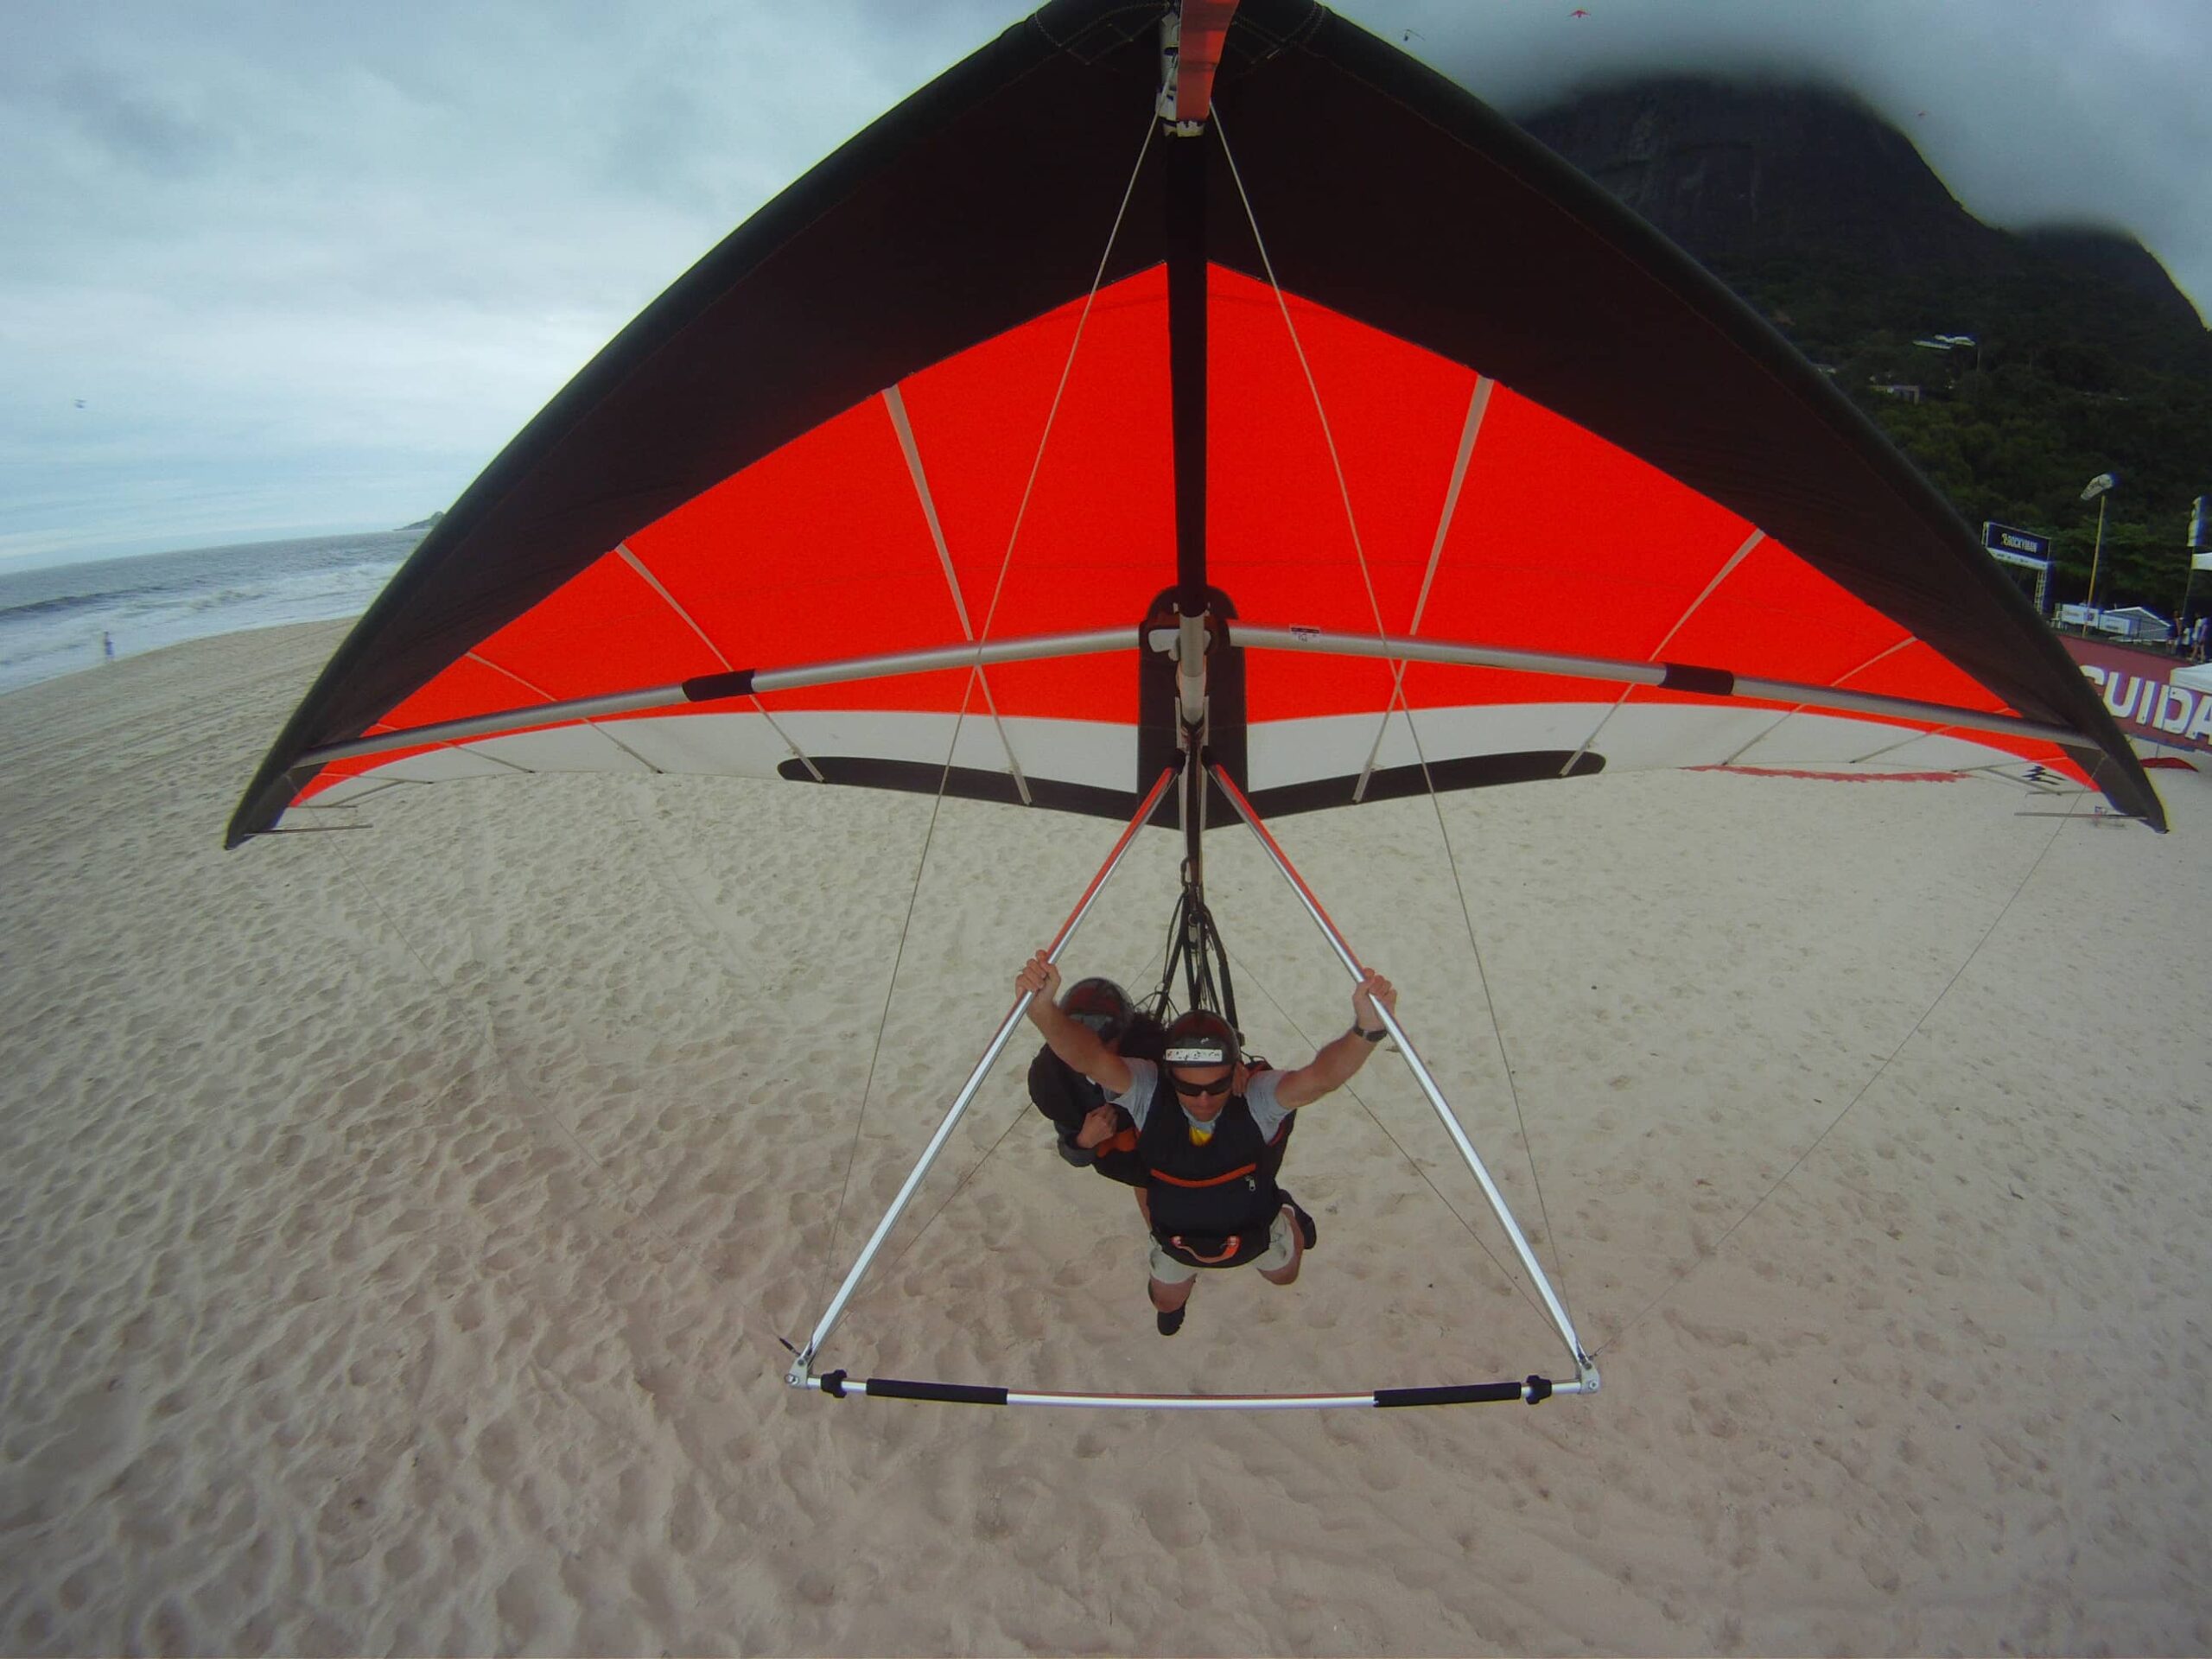 Hang_Glider_landing_on_So_Conrado_Beach_Rio_de_Janeiro-scaled.jpg